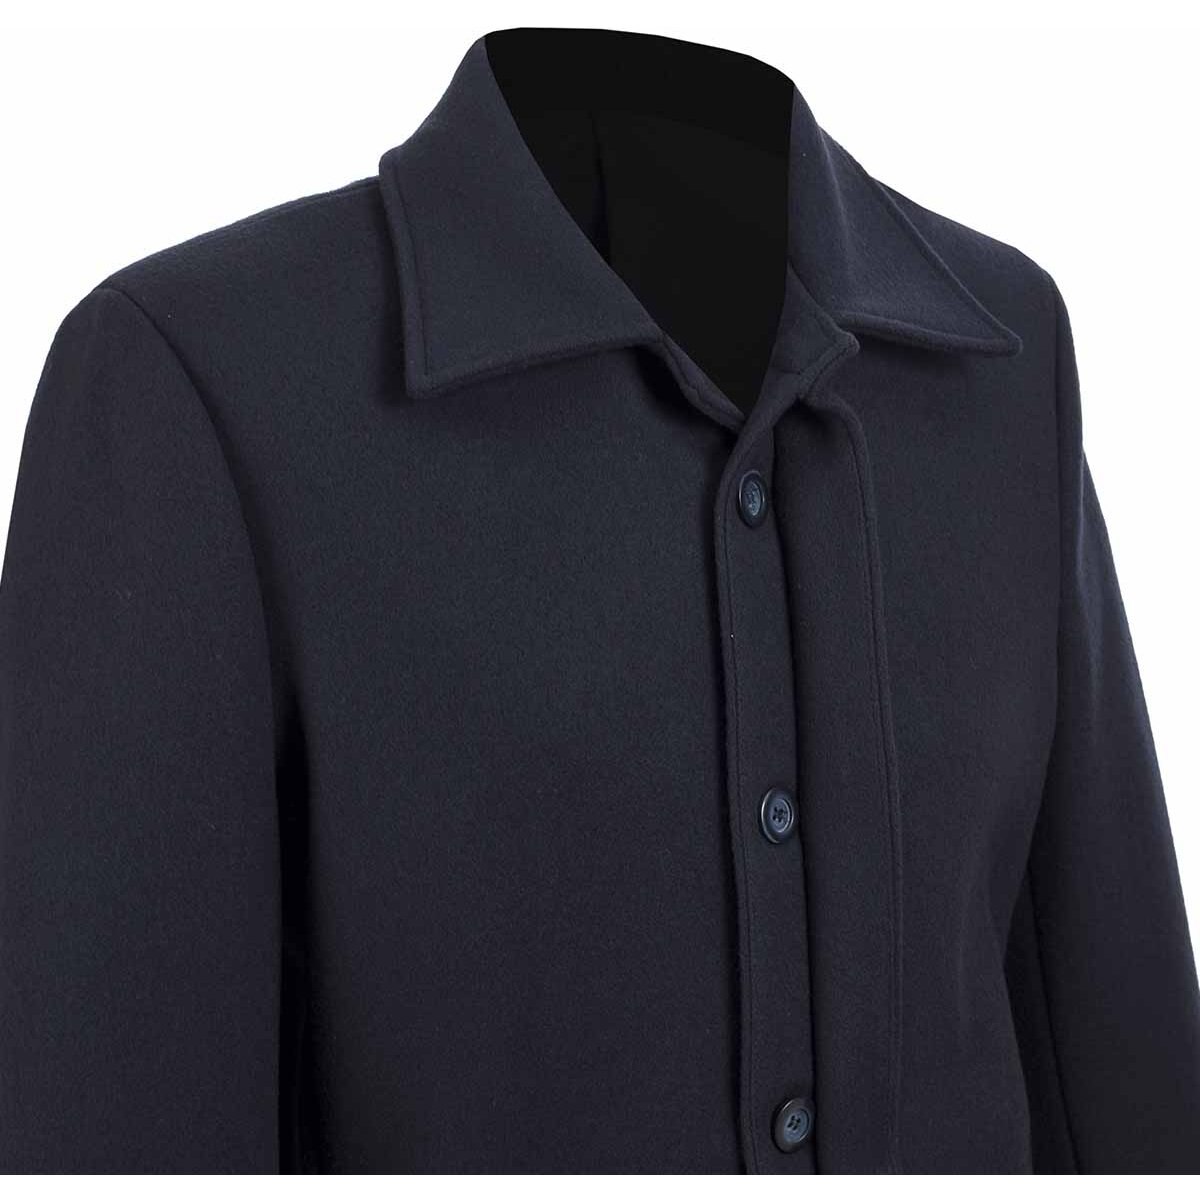 Abrigo Formal Azul Obscuro con 5 Botones para Caballero Carlo Corinto Modelo Amn1020311